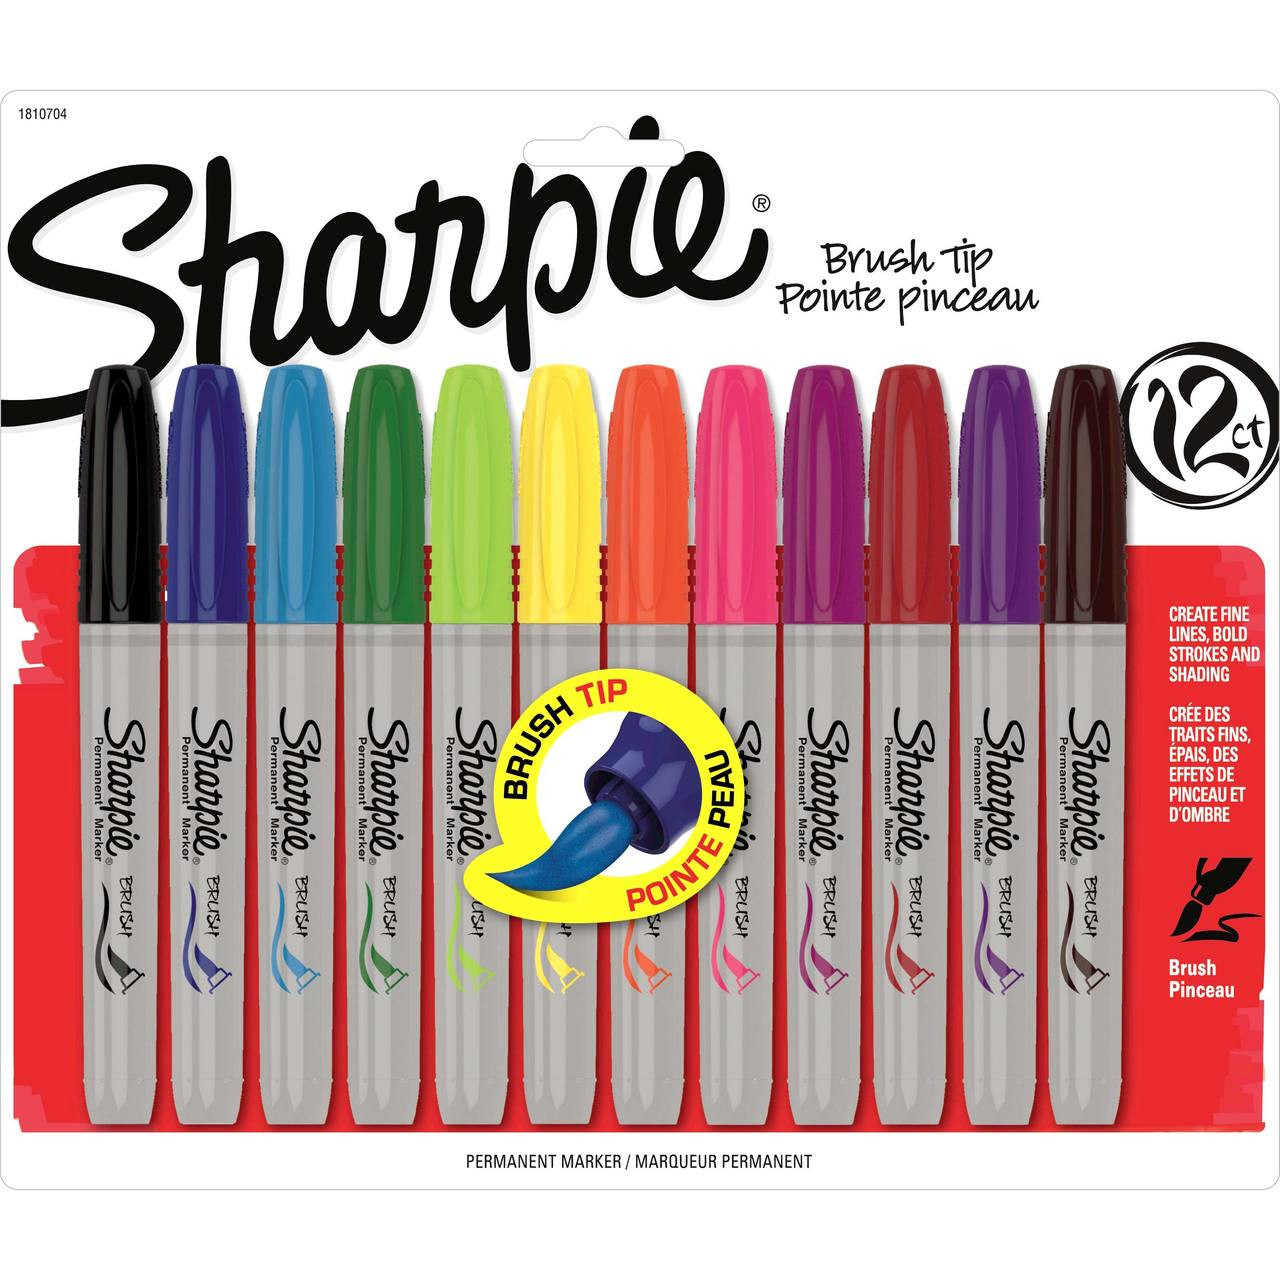 Sharpie Brush Tip Marker 12 Color Set: Berry, Black, Blue, Brown, Green ...